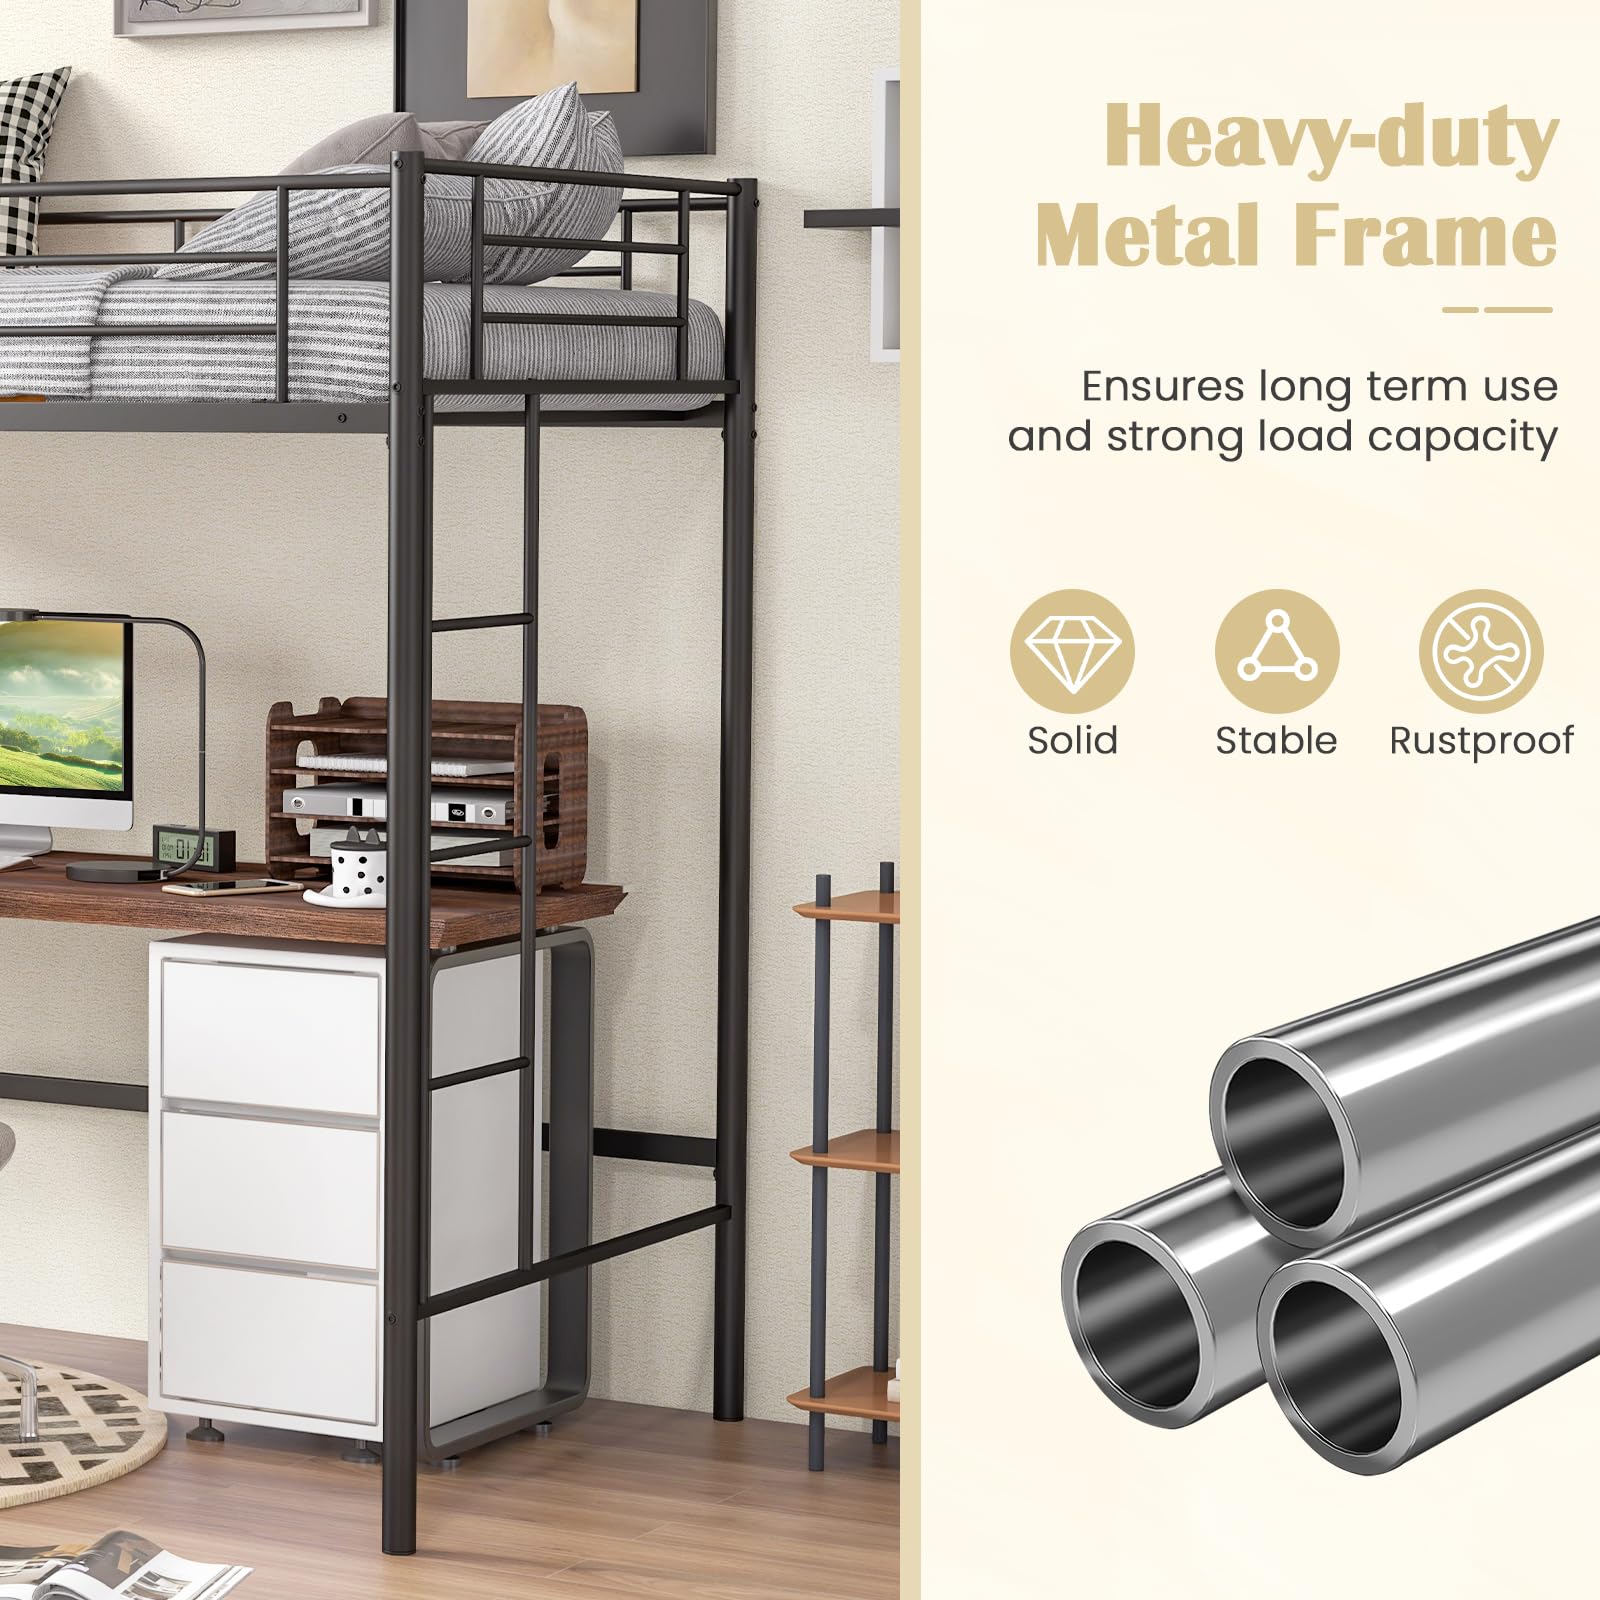 Giantex Metal Loft Bed Twin Size, Heavy Duty Metal Loft Bed Frame